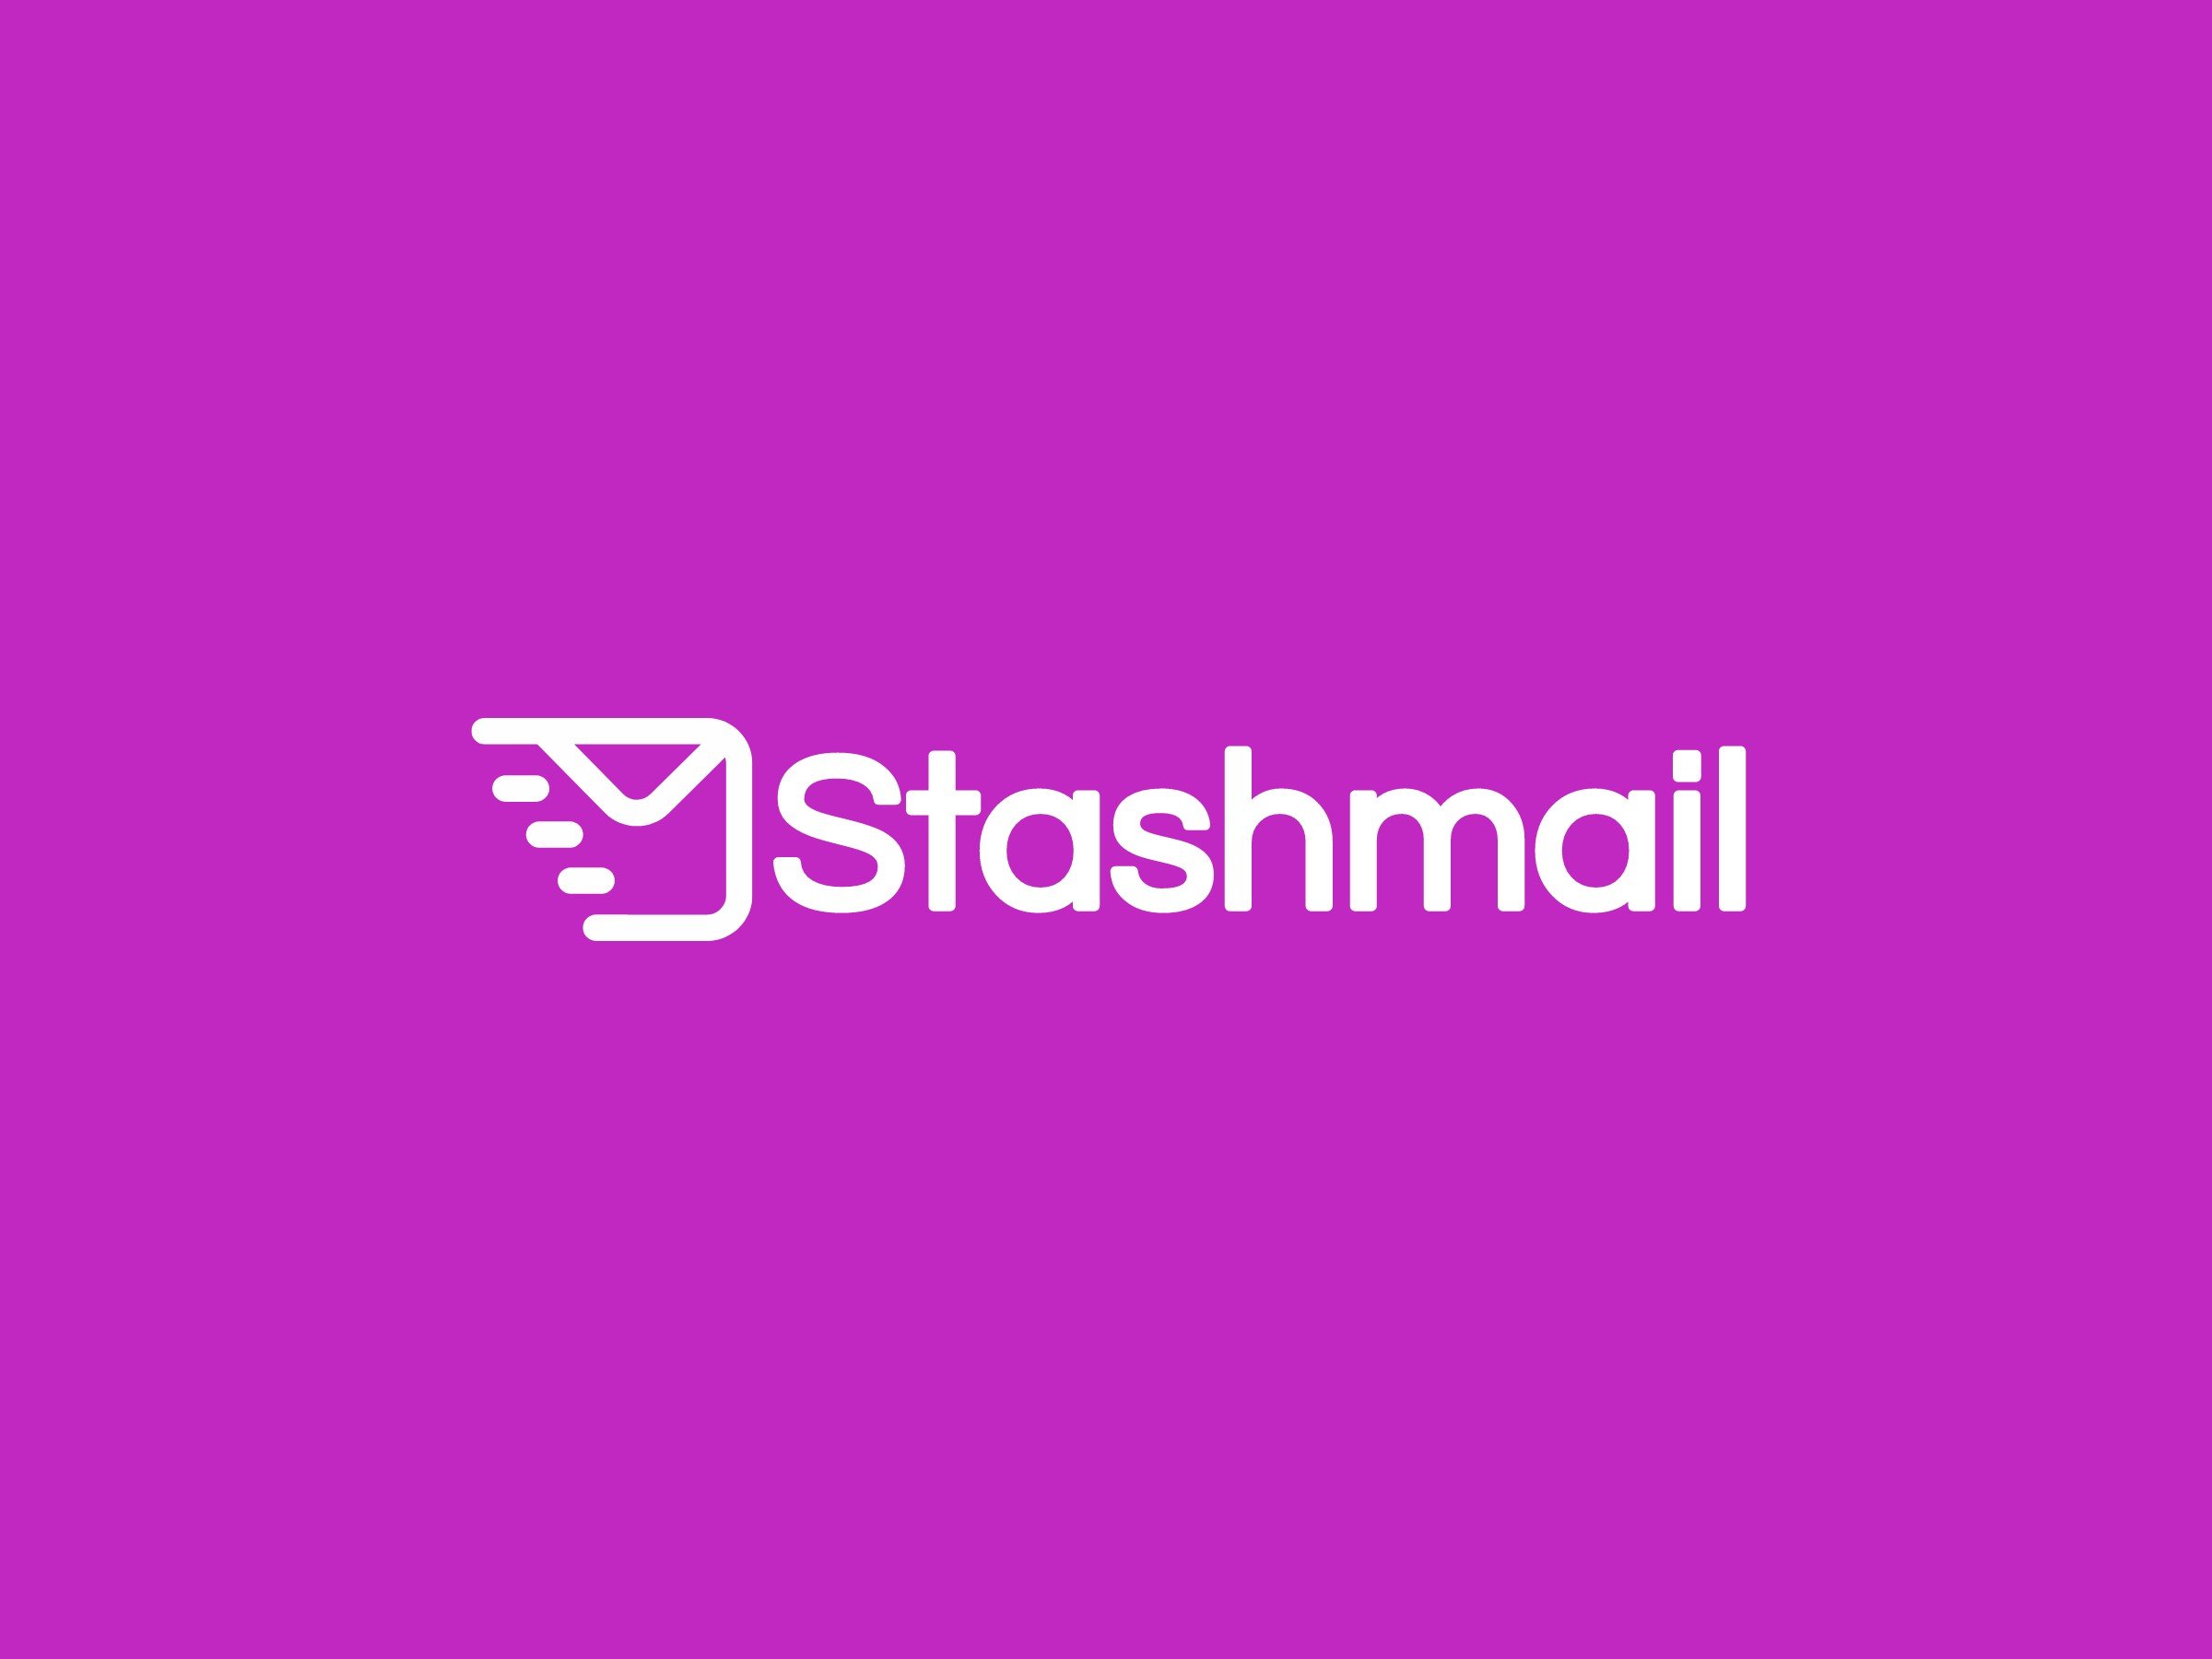 Stashmail logo design